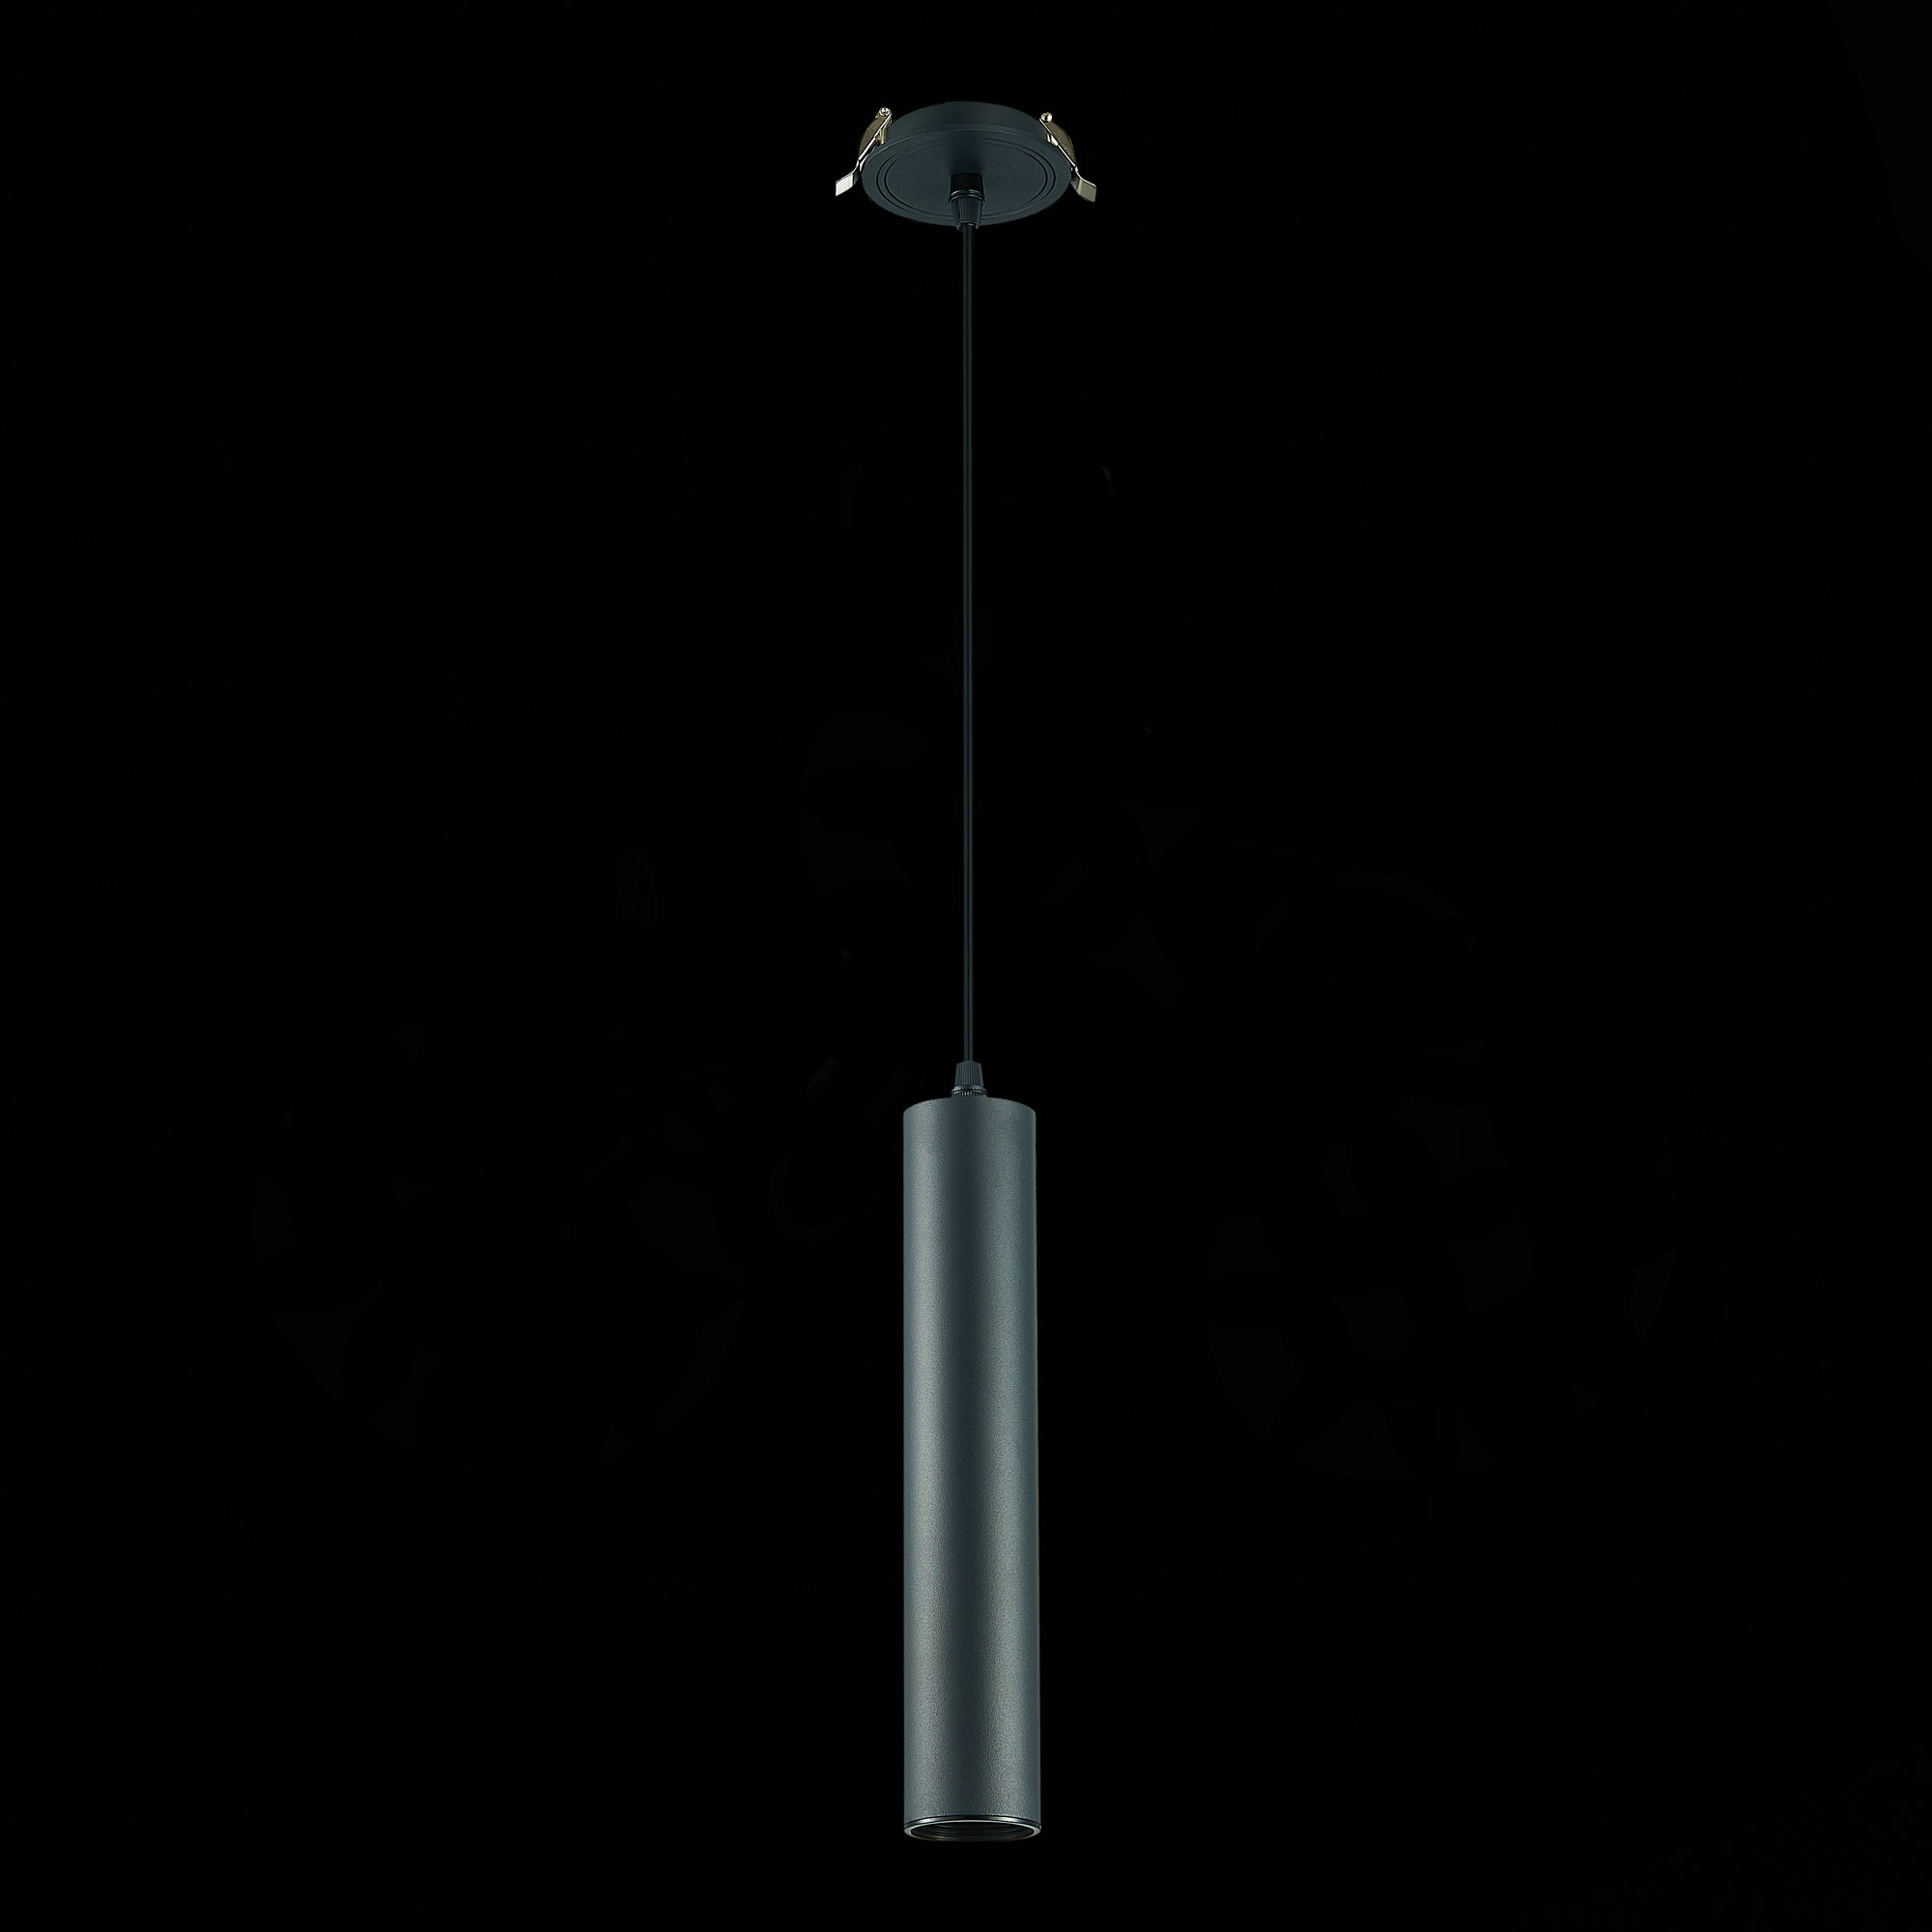 встраиваемый подвесной светильник st luce  st151.408.01, артикул ST151.408.01